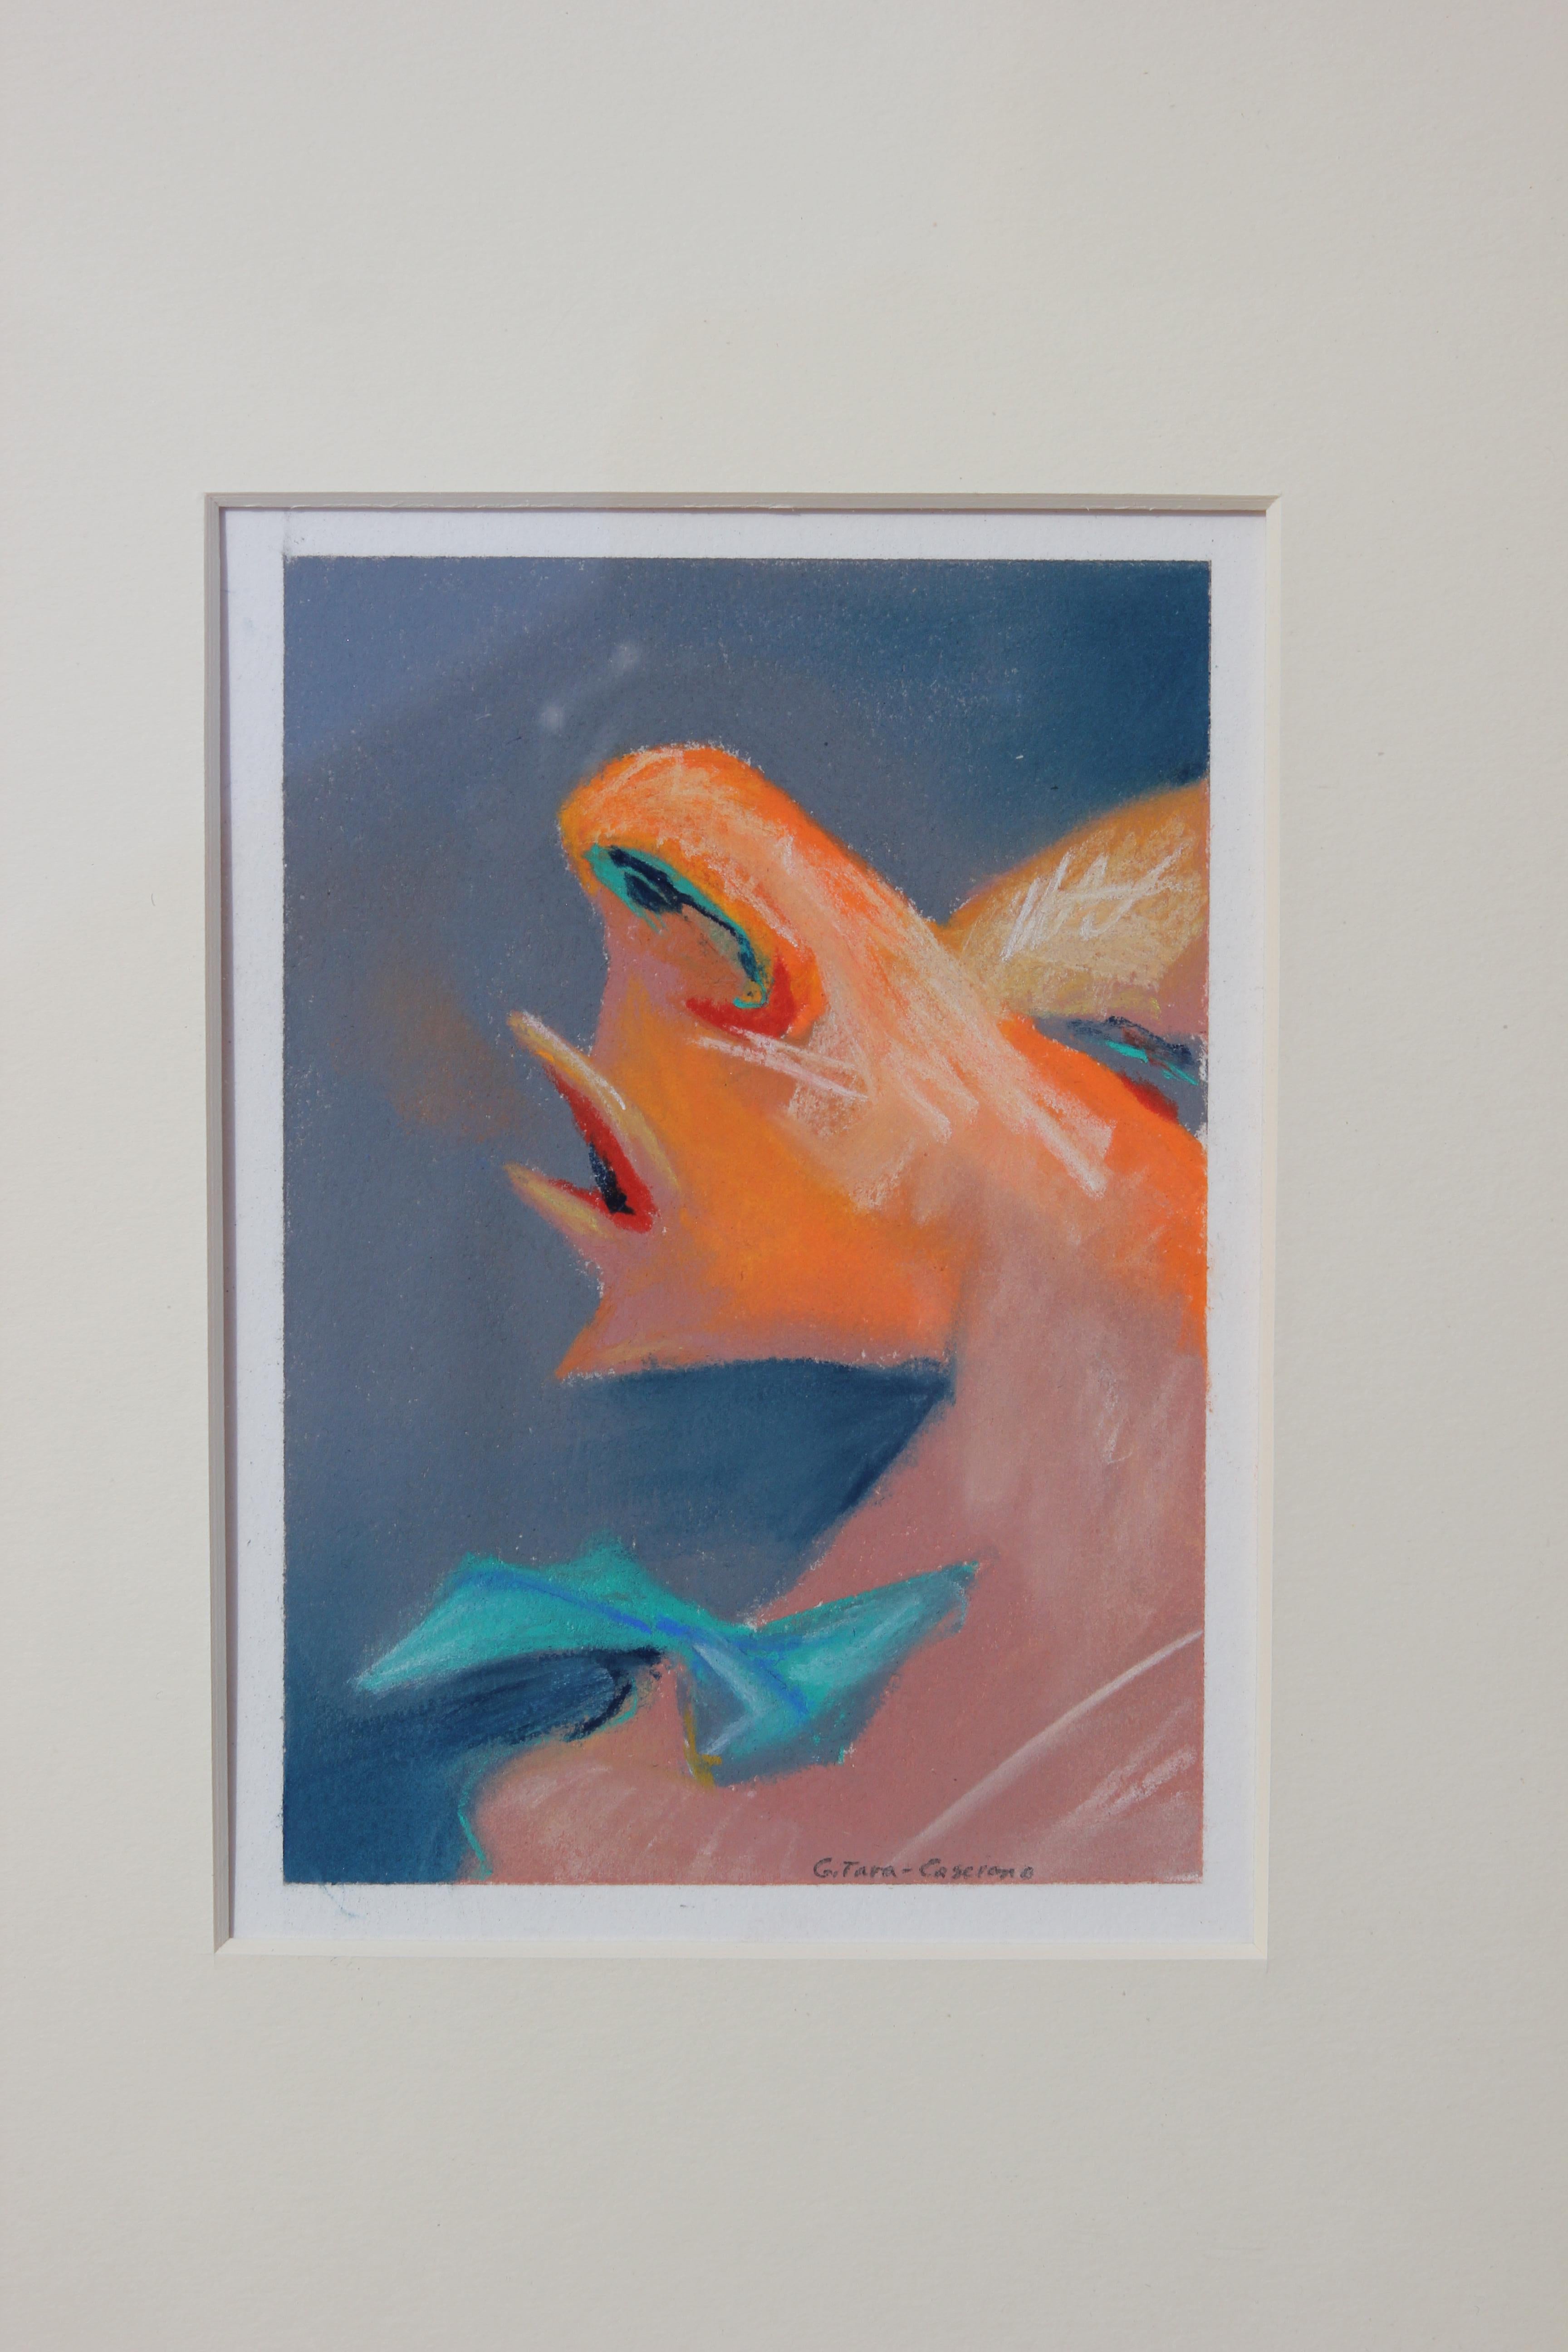 Zeitgenössische abstrakte Pastellzeichnung einer Nase. Die Arbeiten sind hauptsächlich in Blau-, Rosa- und Orangetönen gehalten. Das Werk ist in einem hellen Holzrahmen mit weißem Passepartout gerahmt. Das Werk ist von der Künstlerin Tara Casciano